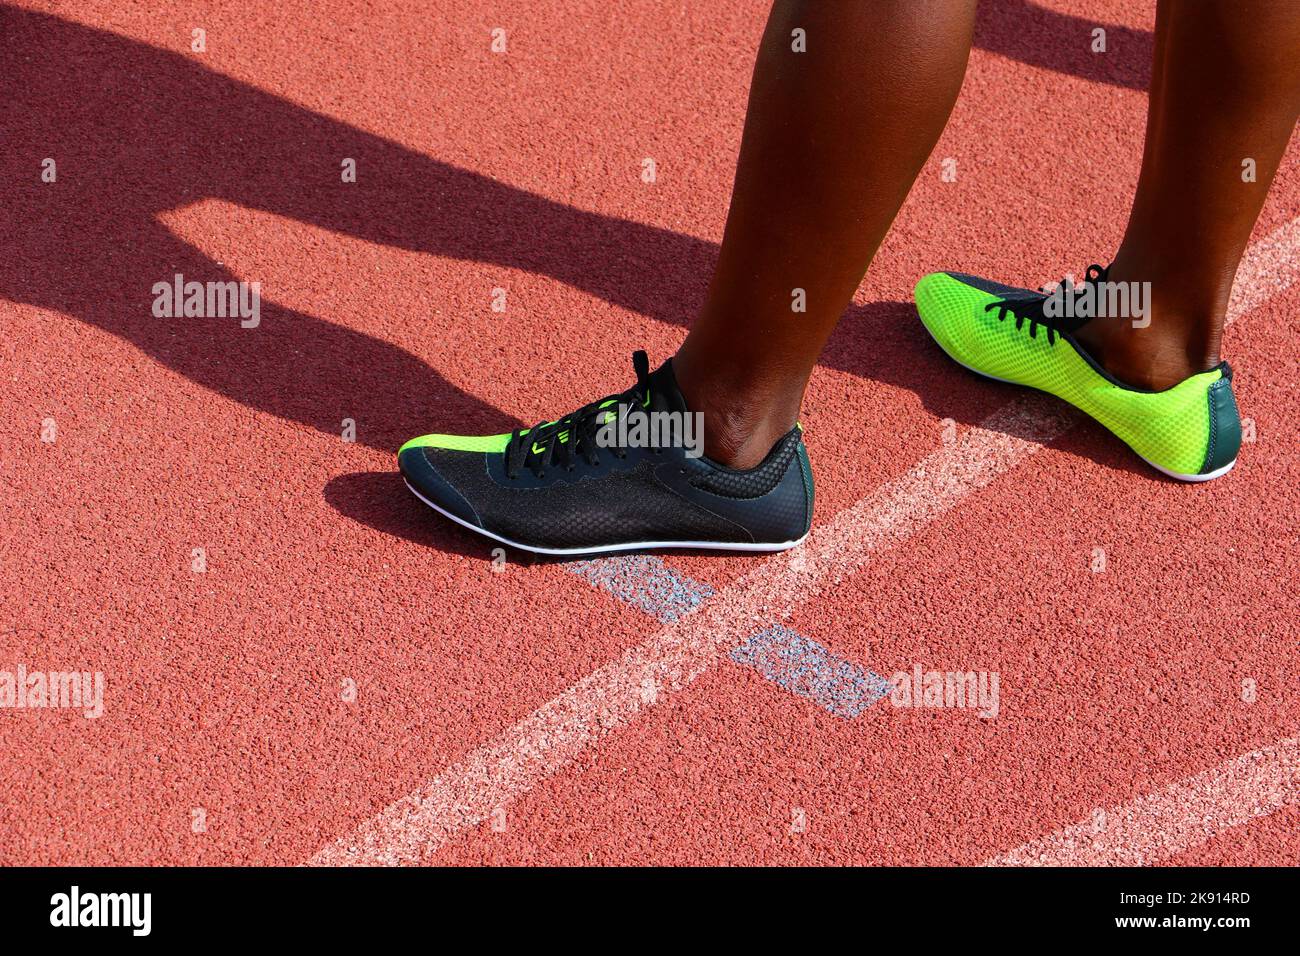 Pieds de sprinters portant des chaussures de course debout sur une piste d'athlétisme Banque D'Images